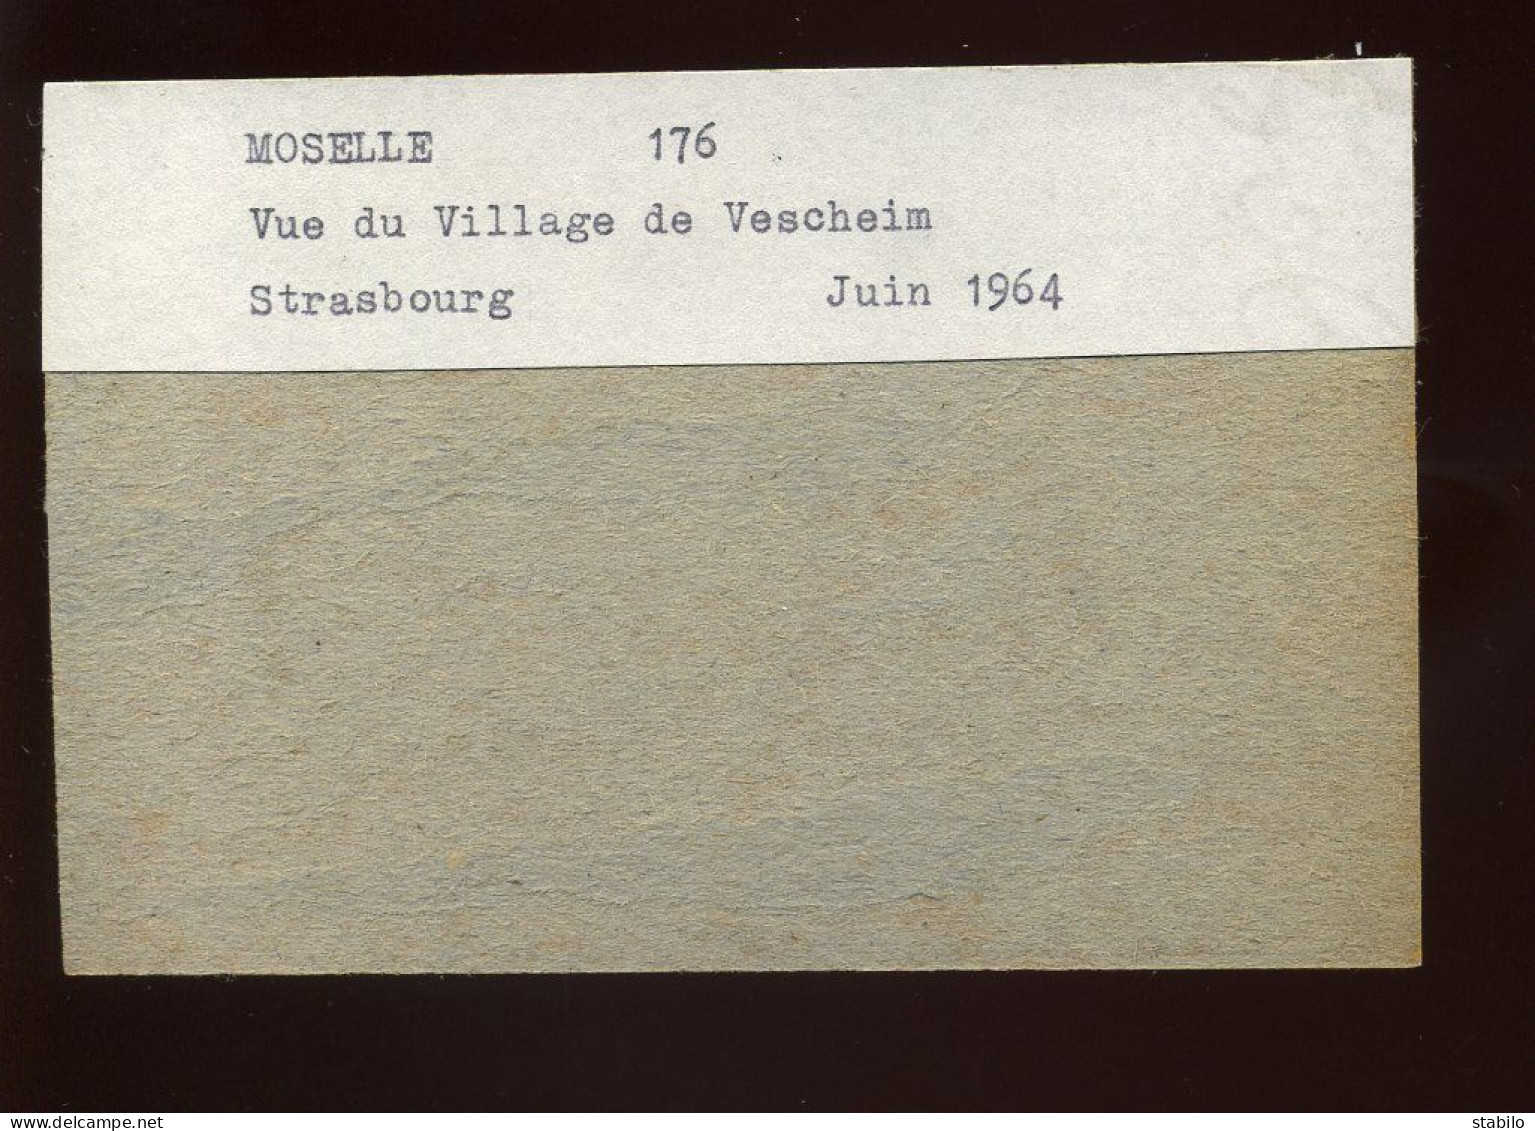 VESCHEIM (MOSELLE) - LE VILLAGE - JUIN 1964 - FORMAT : 11.5 X 7.5 CM - Lieux